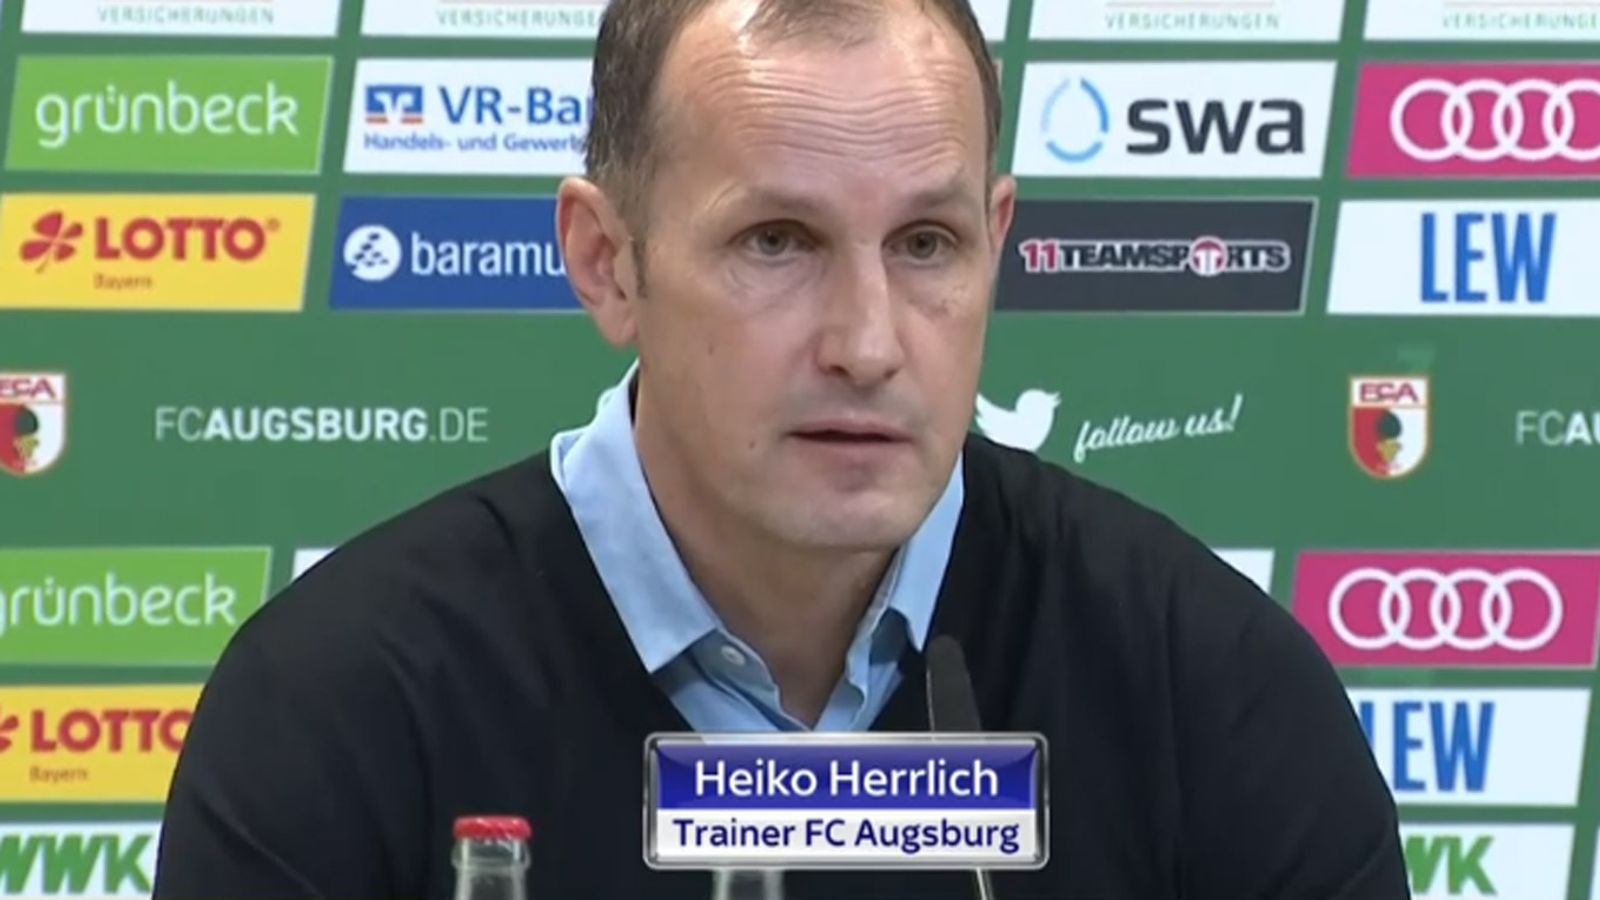 Heiko Herrlich Trainer